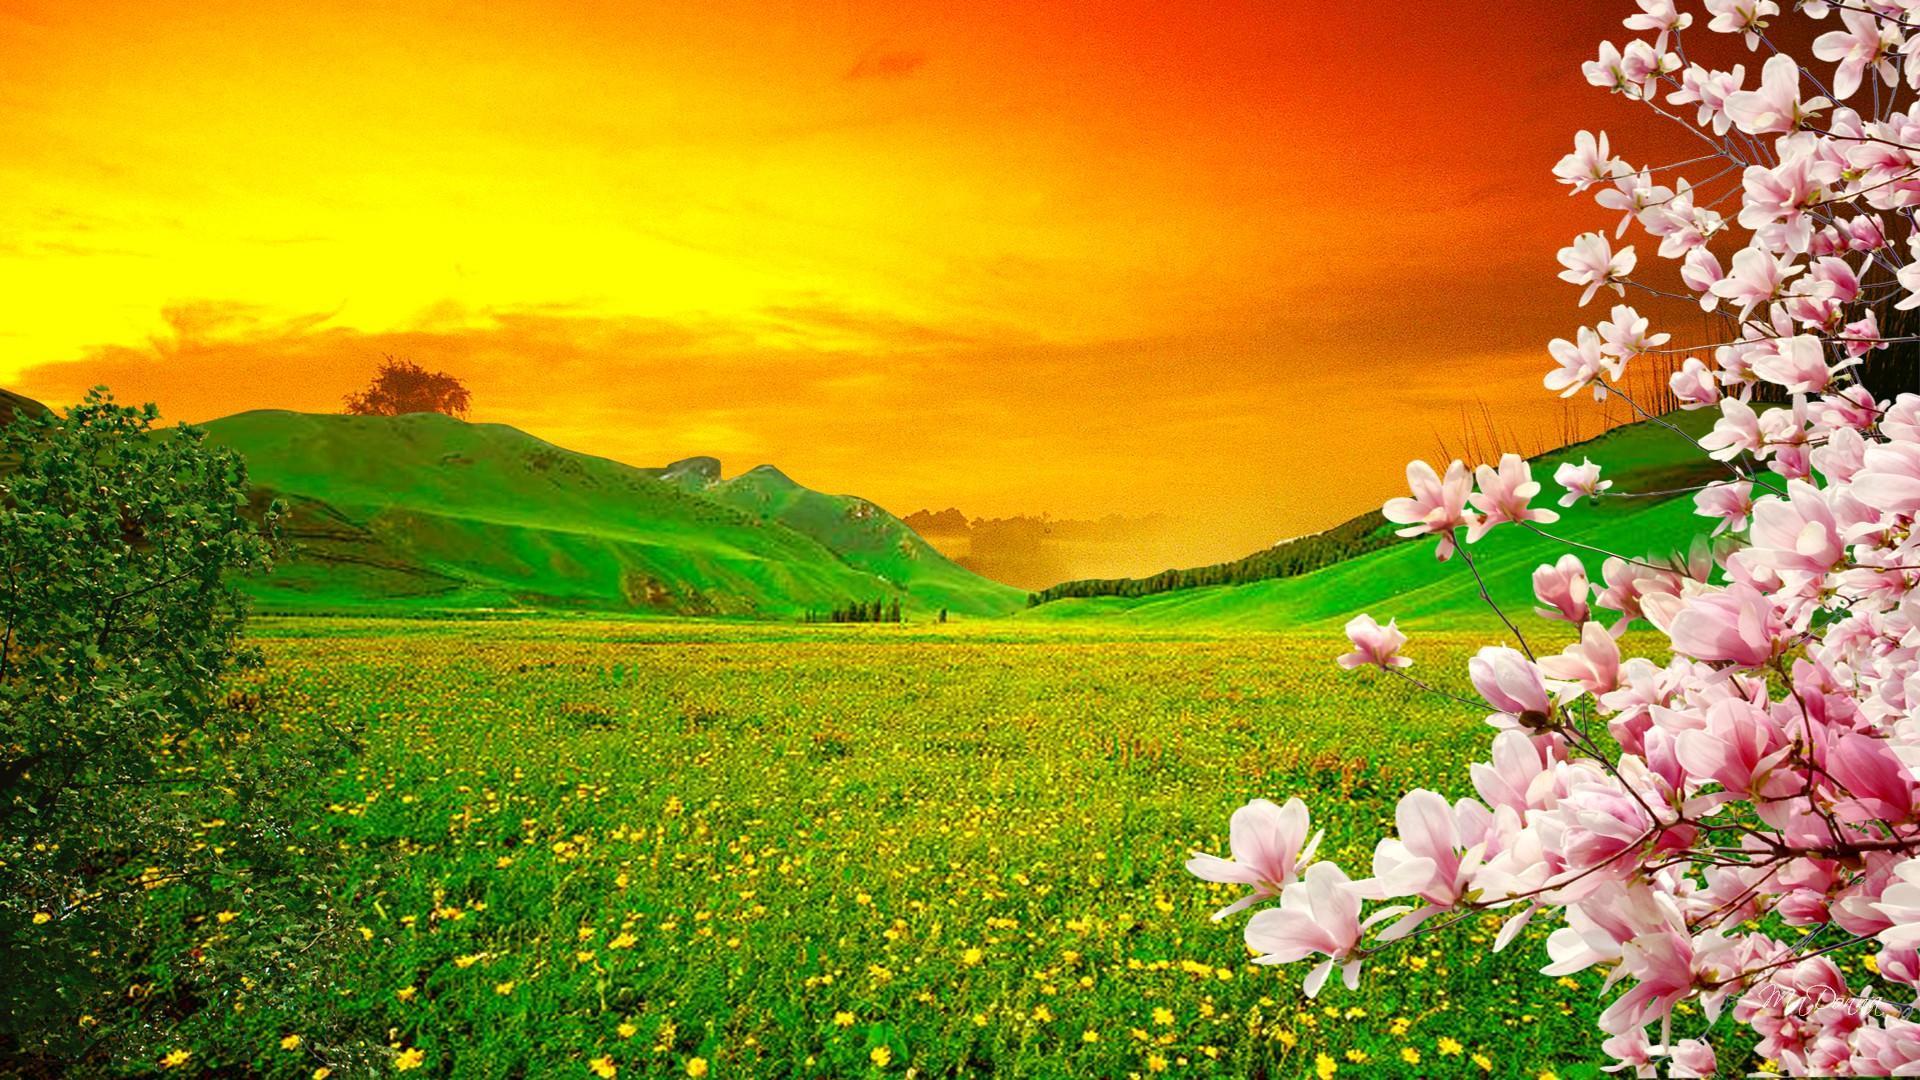 Sakura Sunset HD desktop wallpaper, Widescreen, High Definition